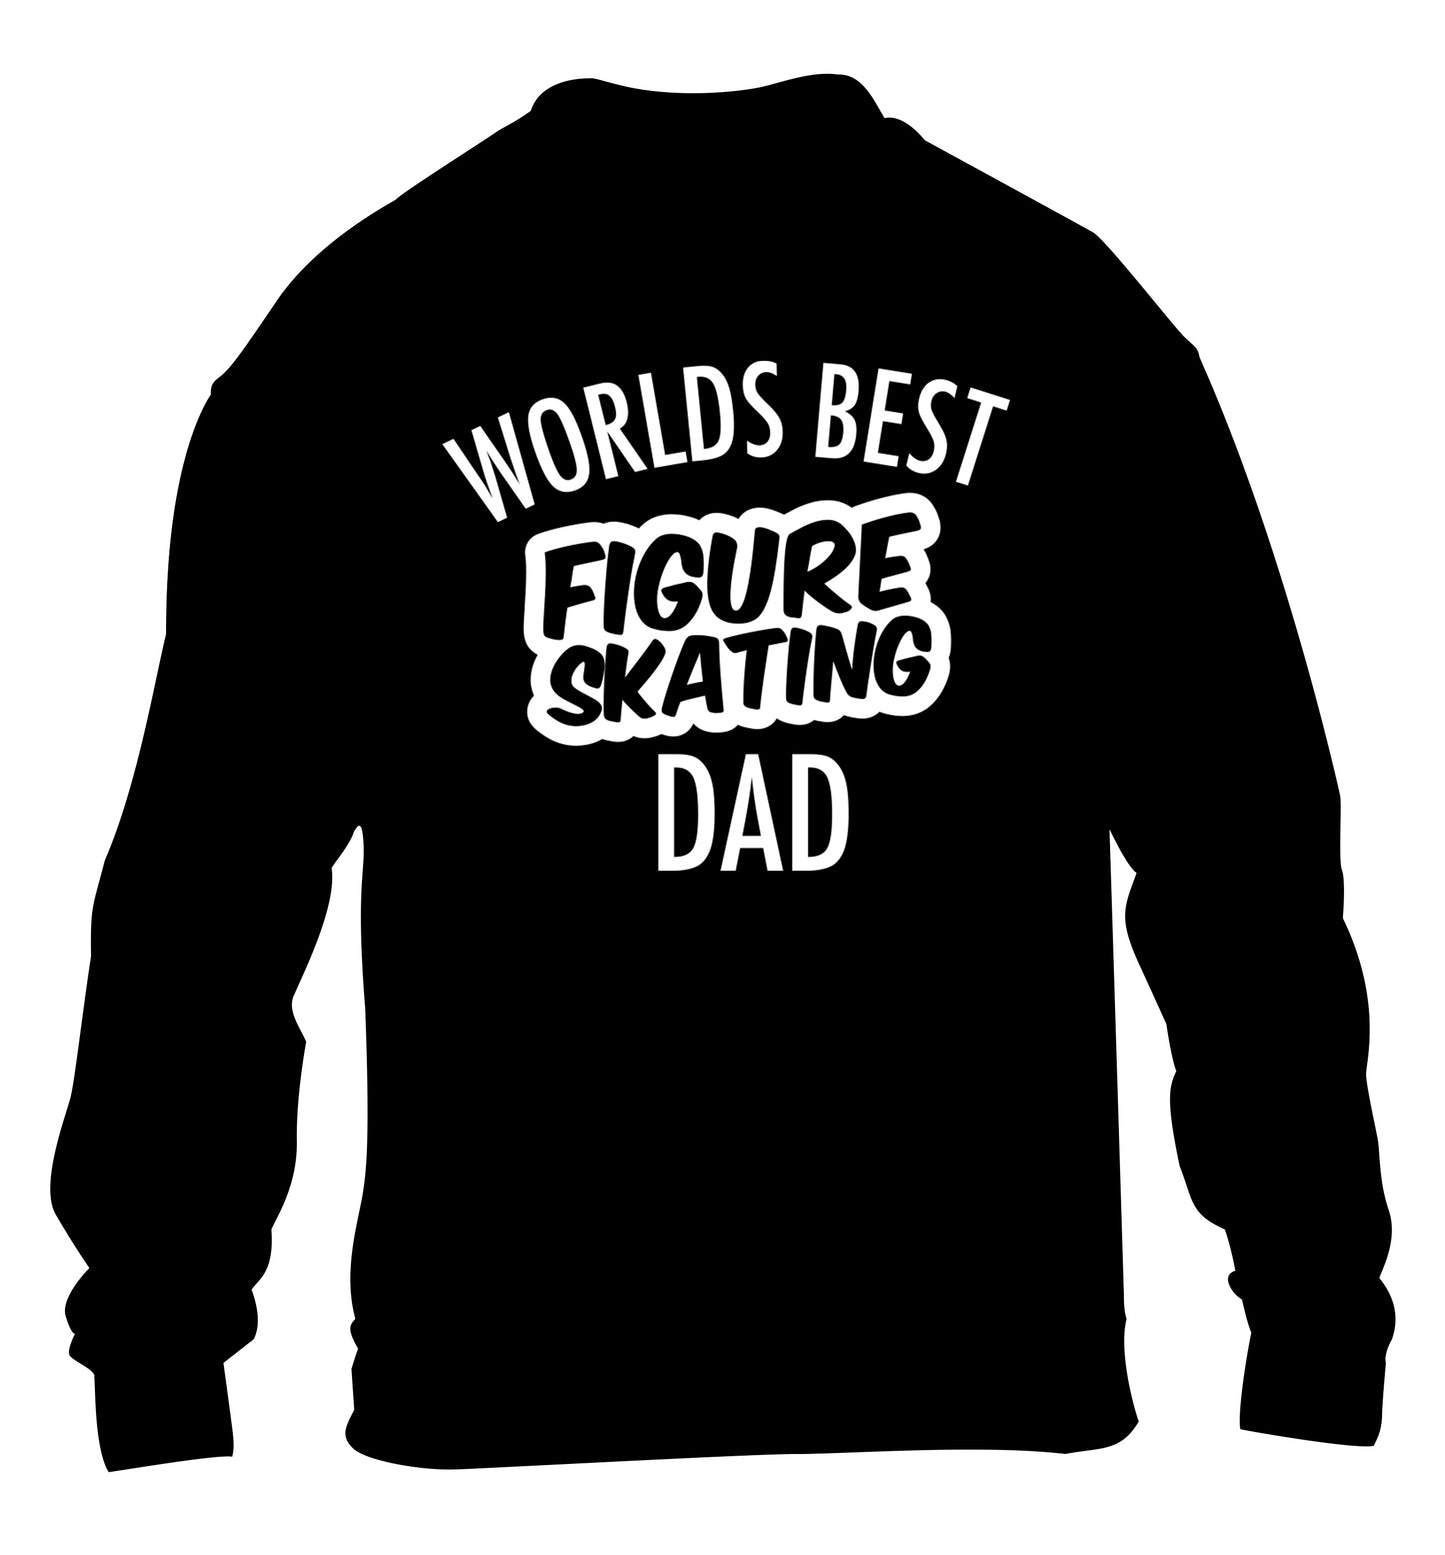 Worlds best figure skating dad children's black sweater 12-14 Years